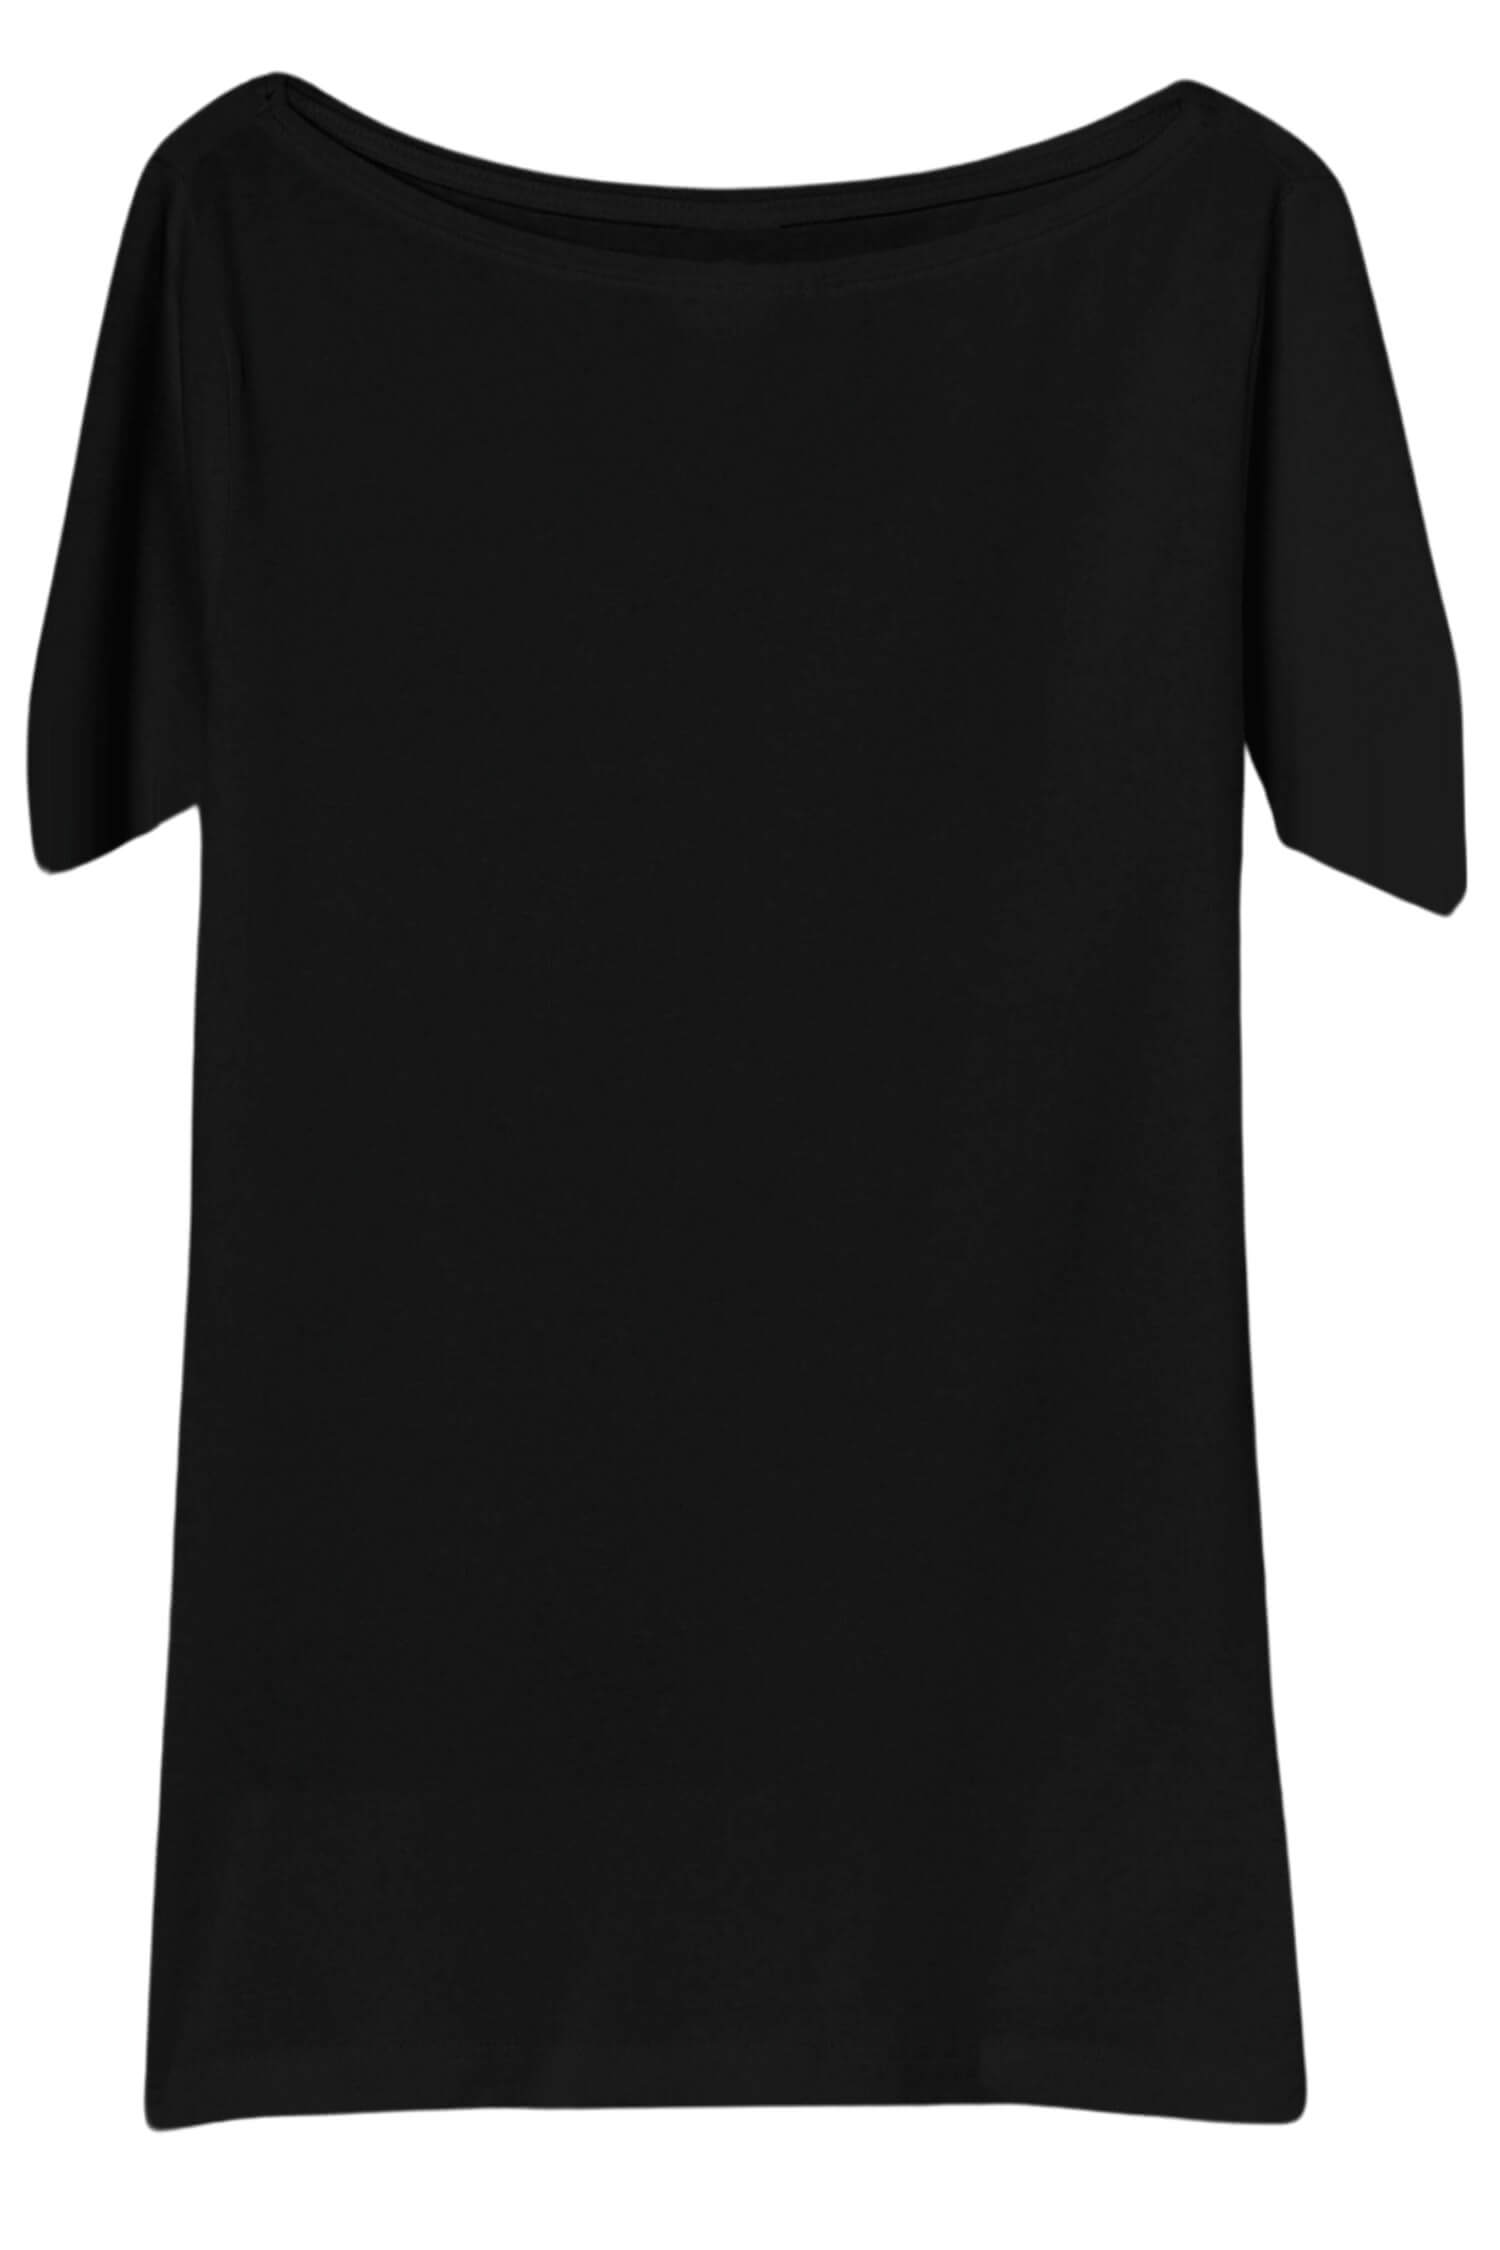 Danica dámské tričko s krátkým rukávem TSK-1005 XXL černá